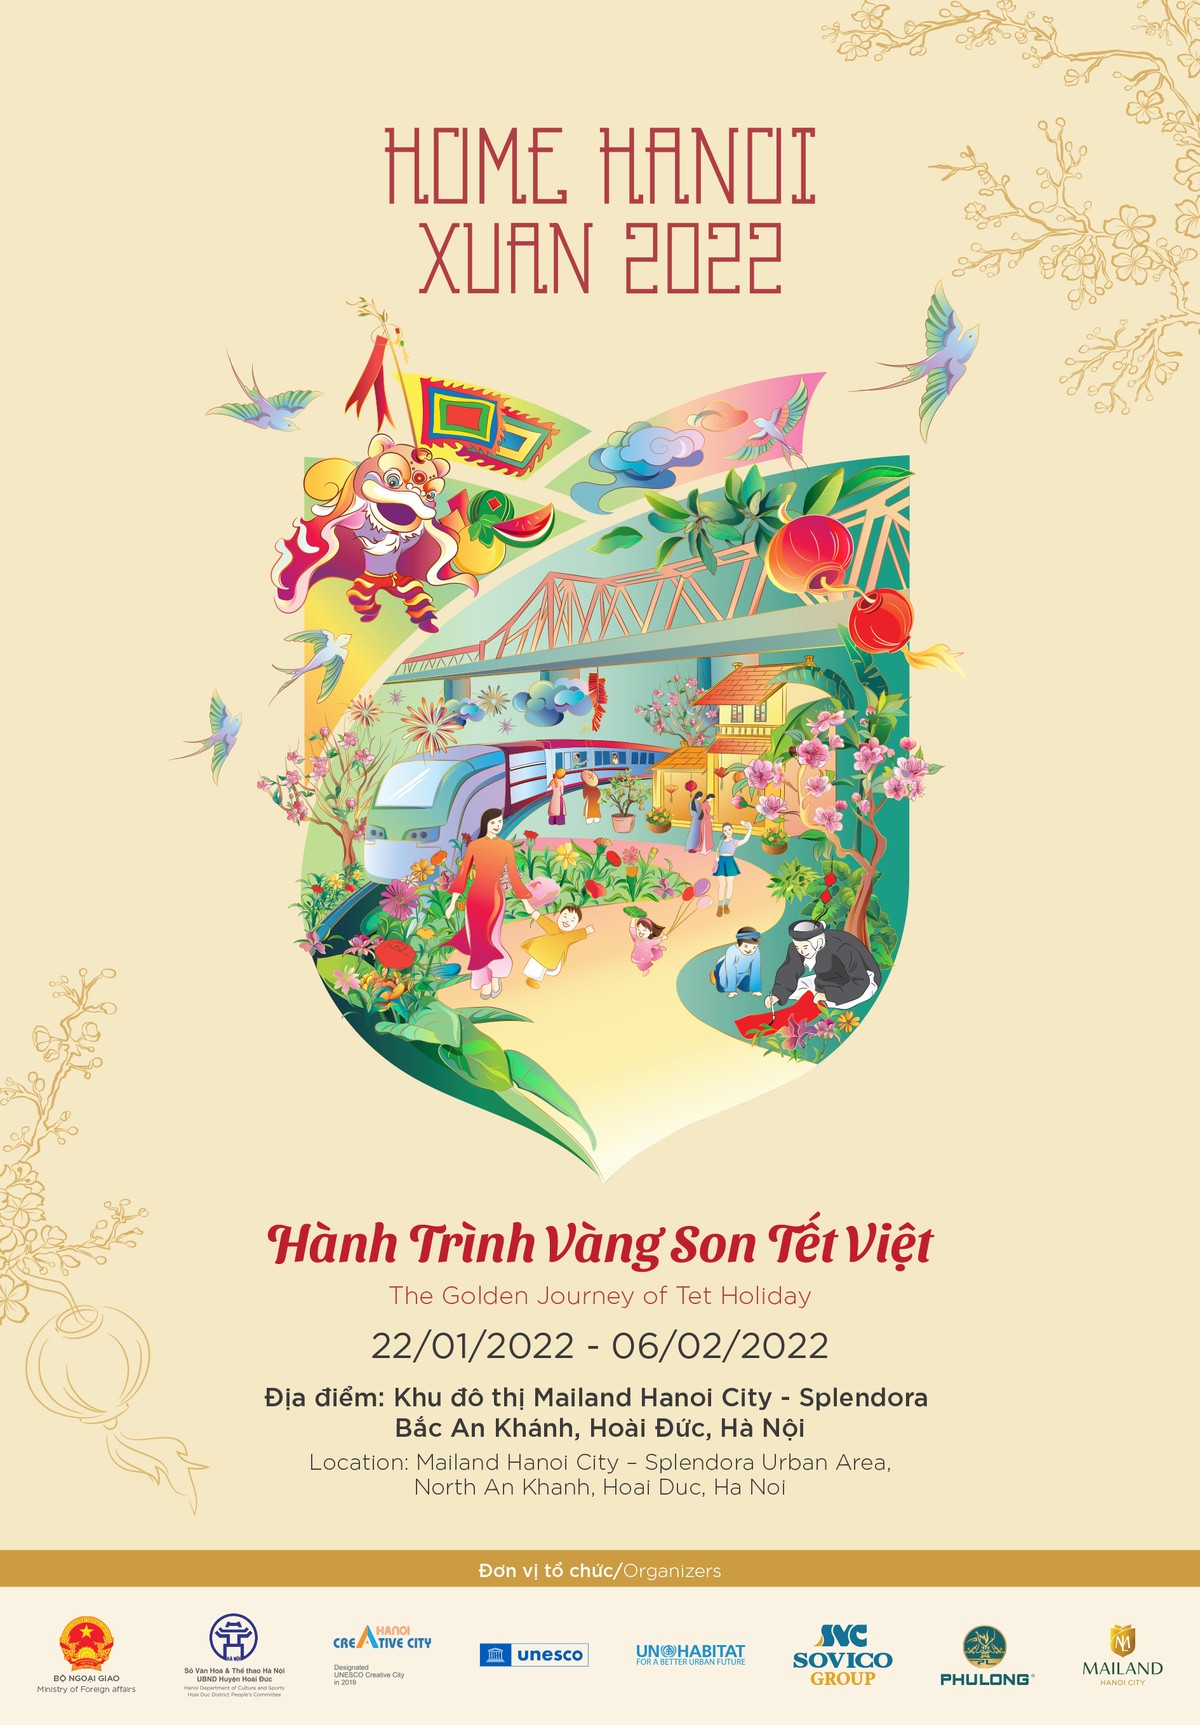 Lễ hội đường hoa Xuân Hà Nội – hành trình vàng son Tết Việt